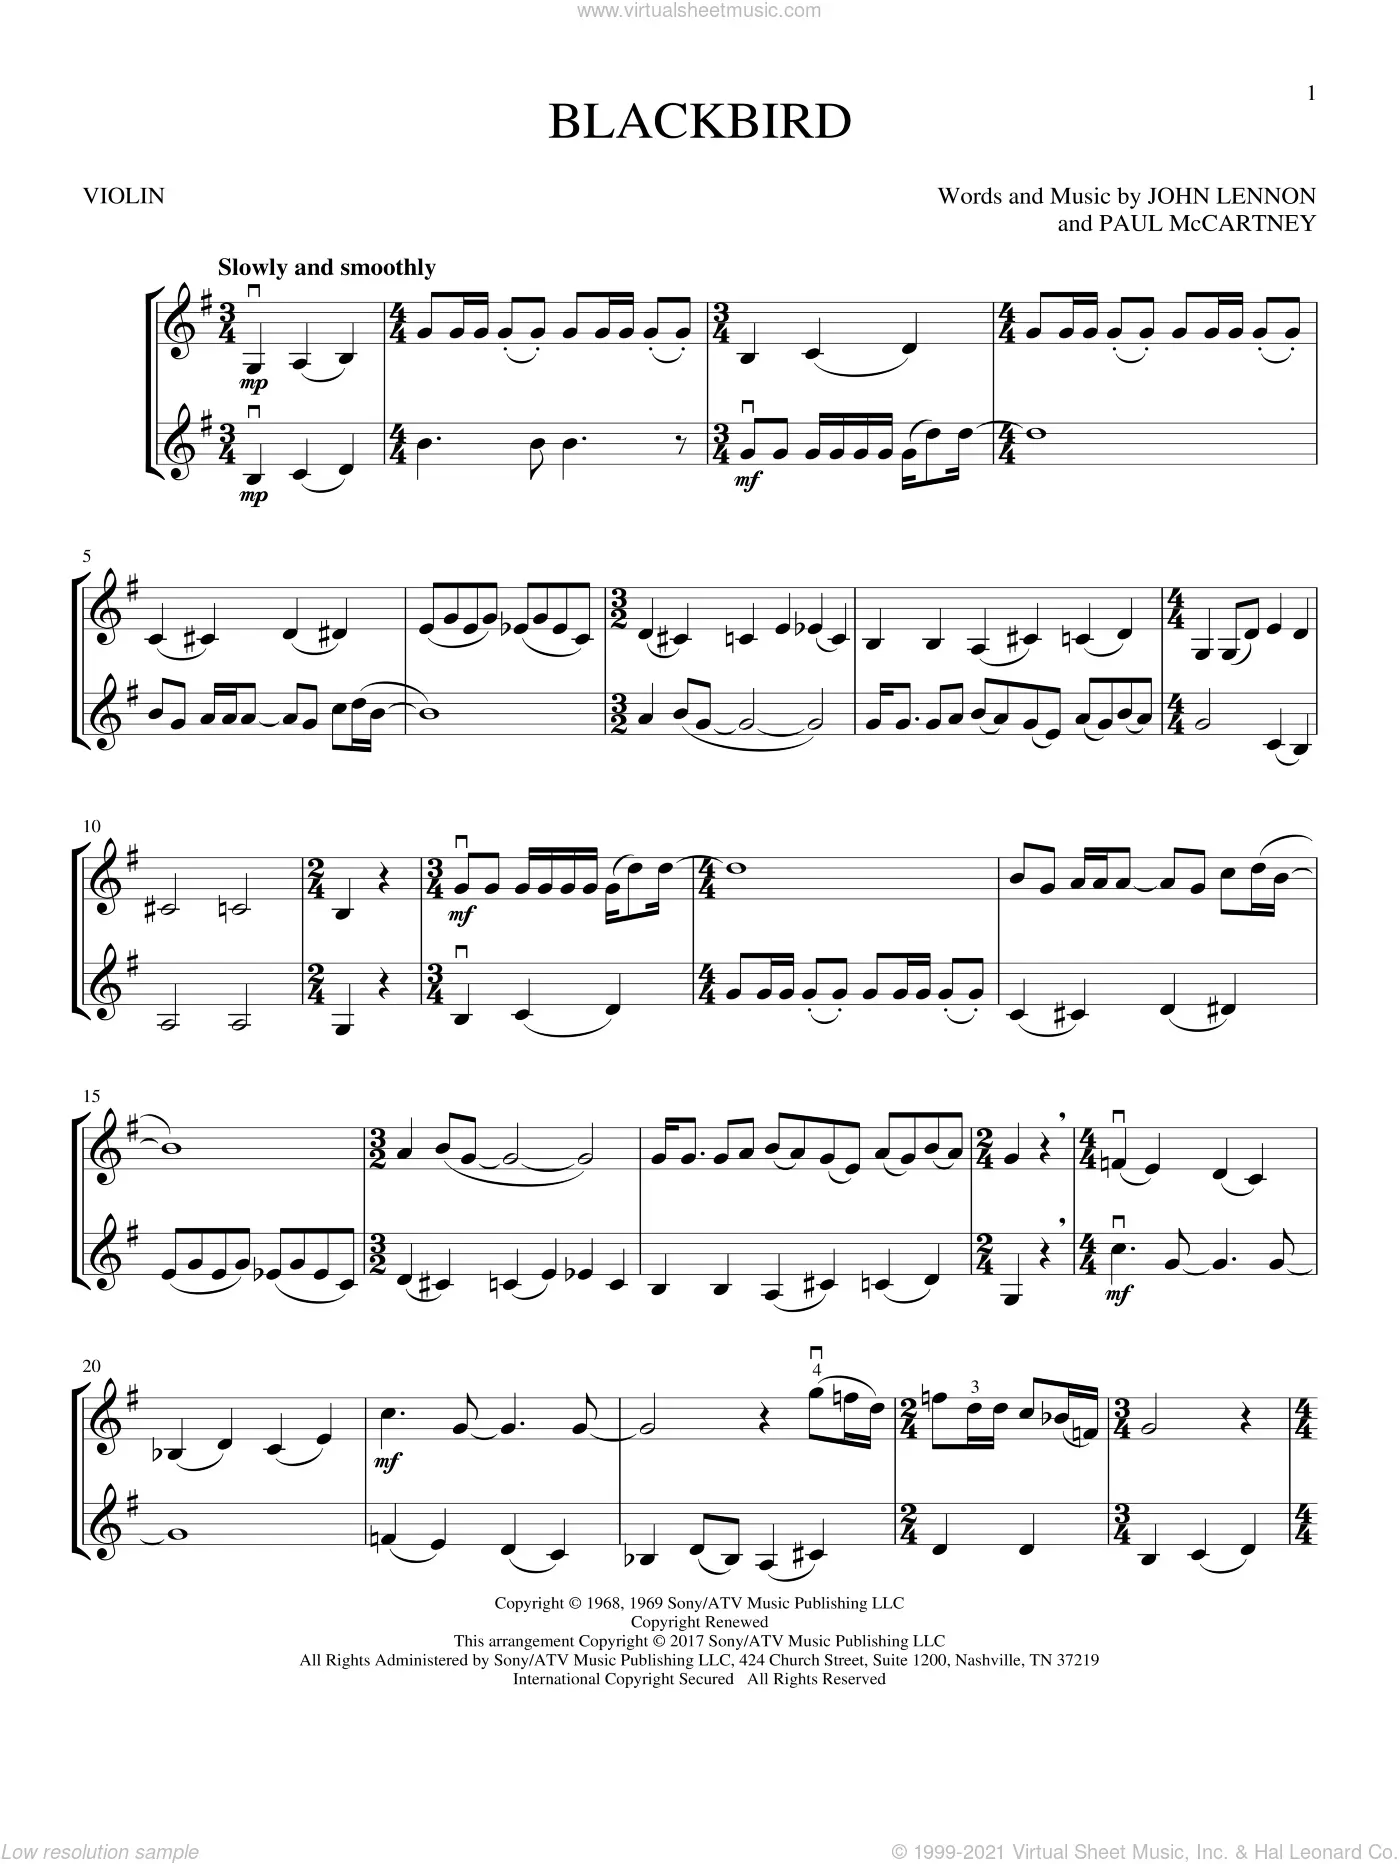 blackbird partitura violin - Is Blackbird a hard song to play